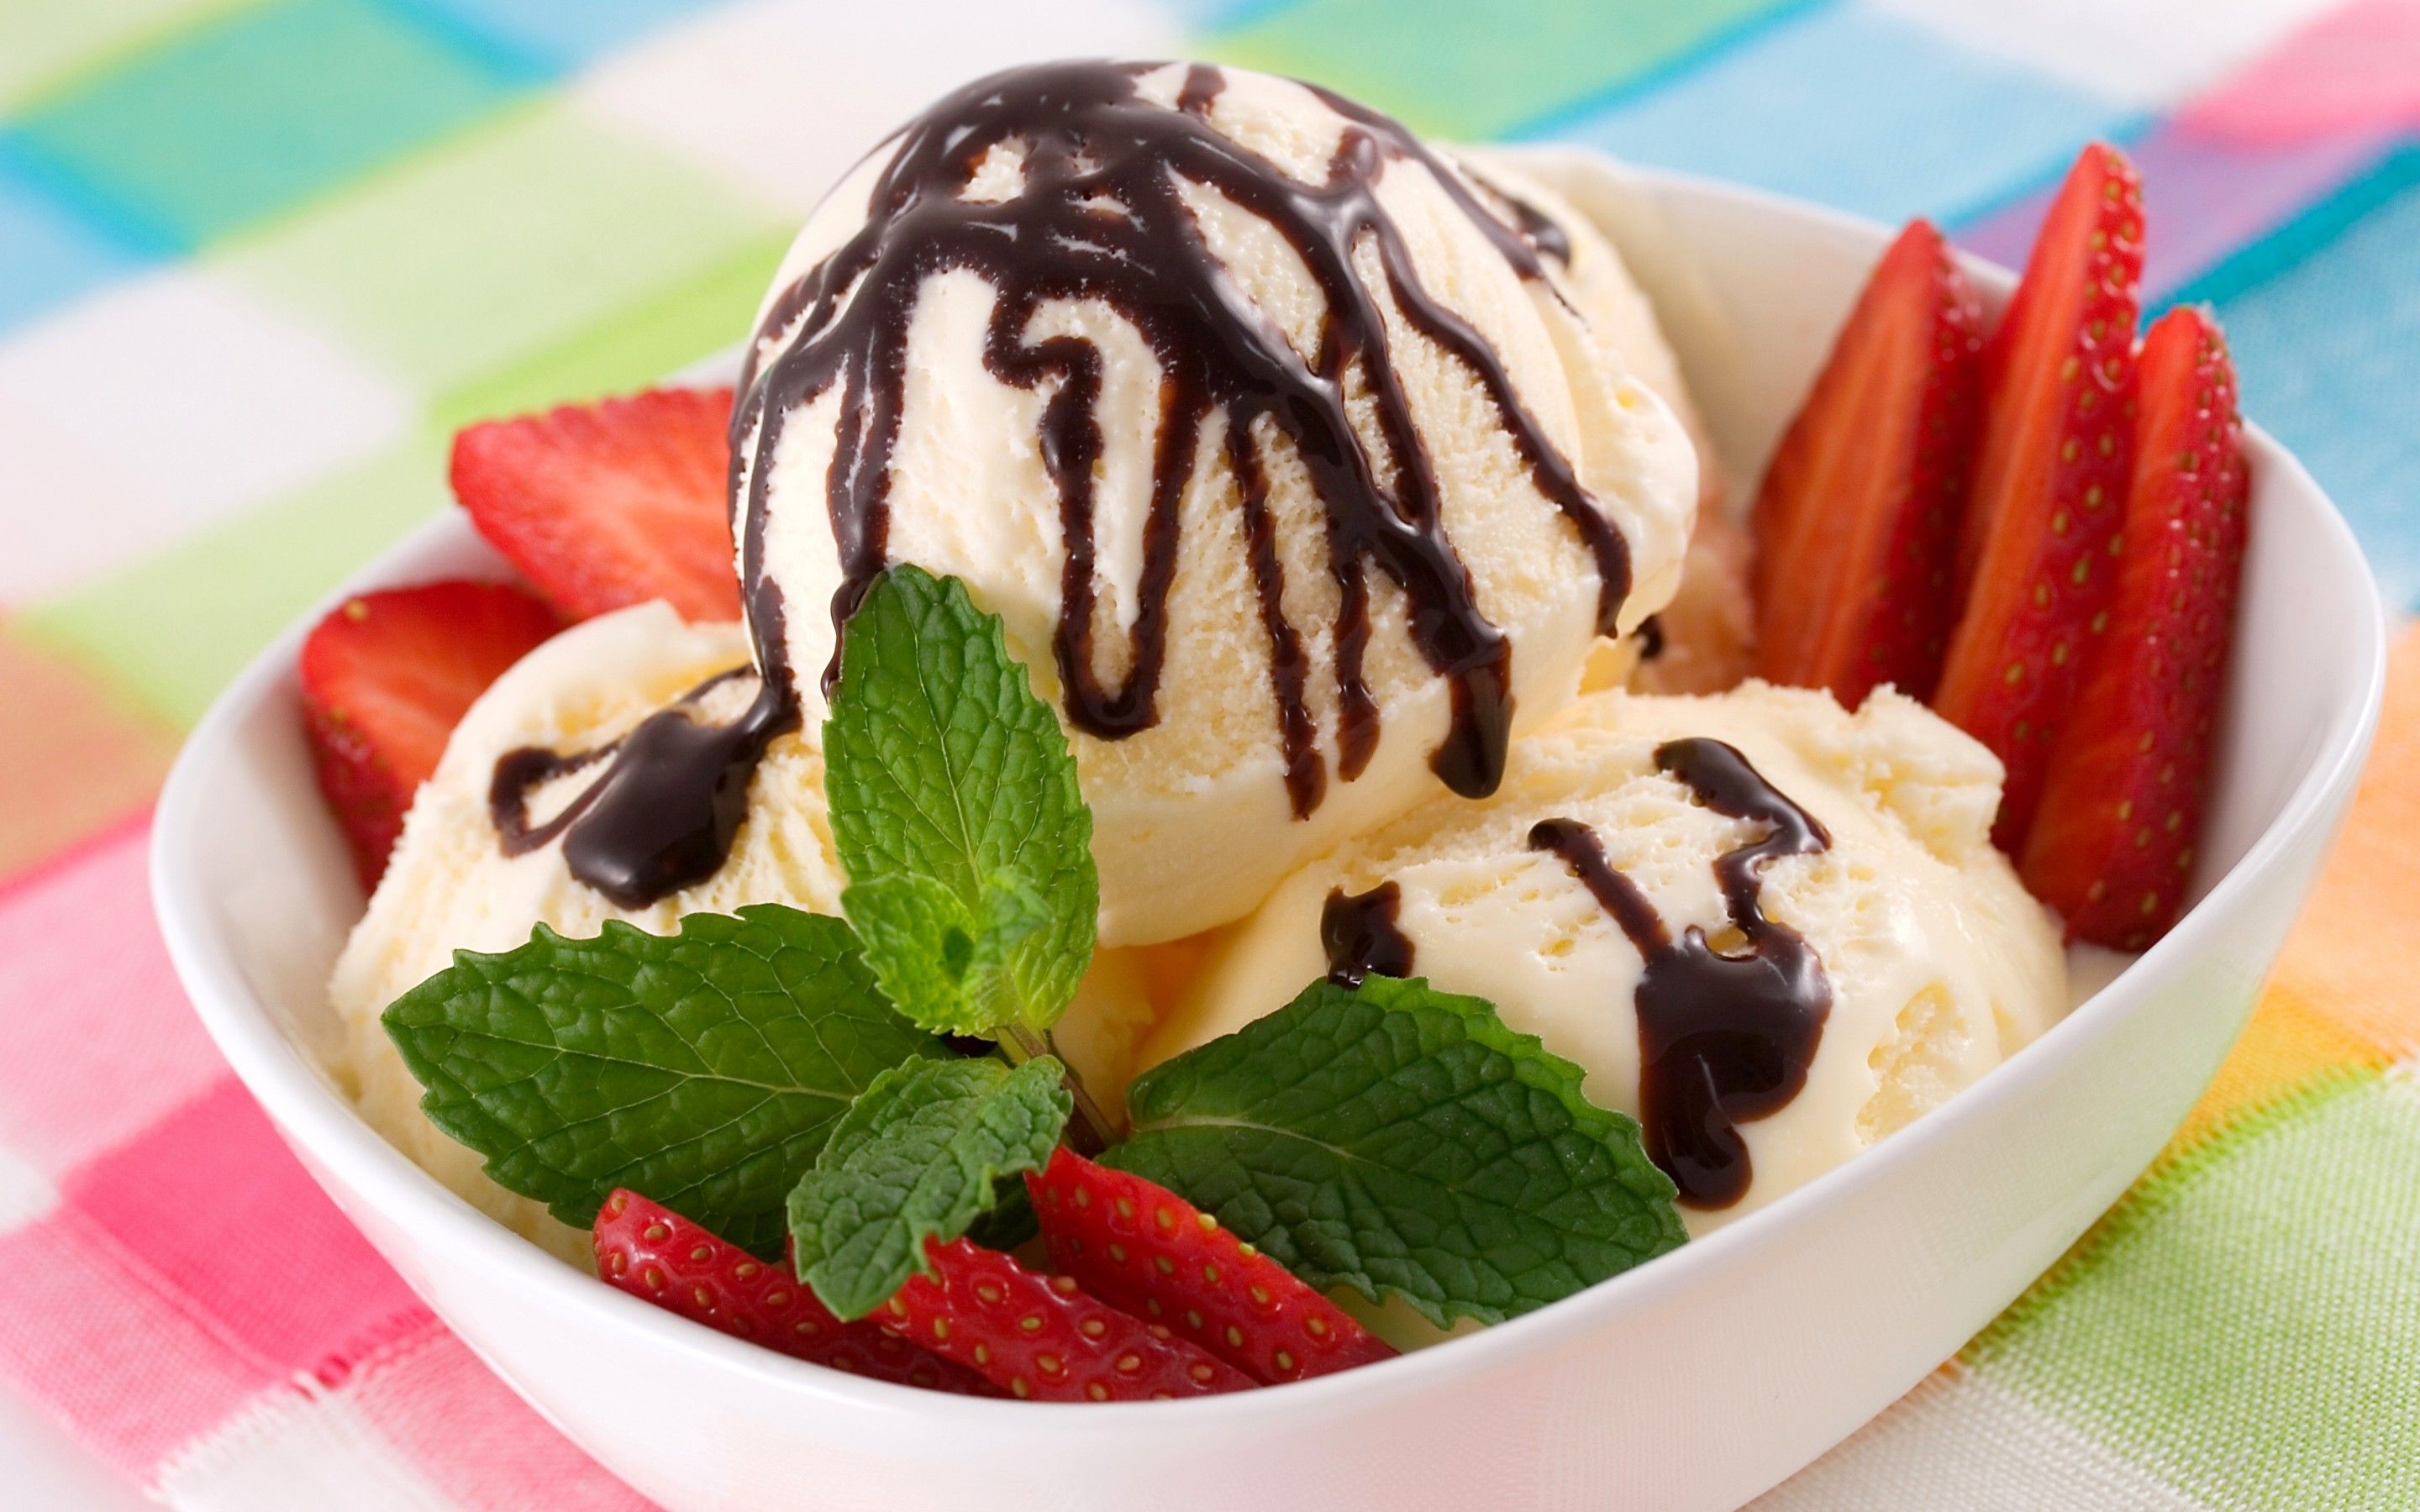 Vanilla Ice Cream With Chocolate And Strawberries